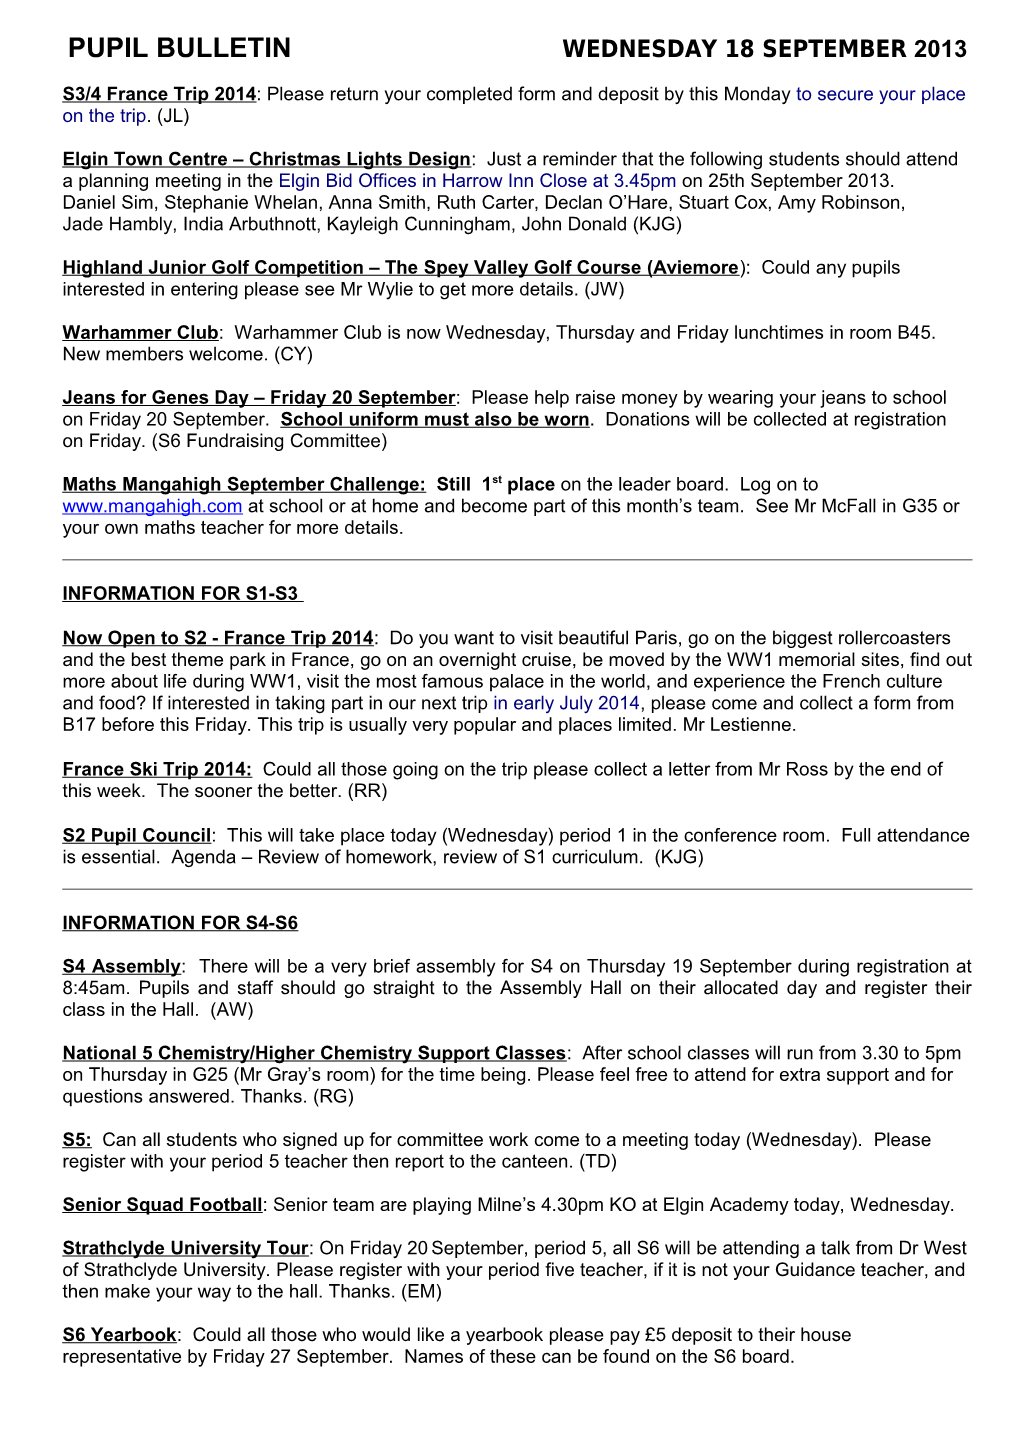 Pupil Bulletin Wednesday 18 September2013